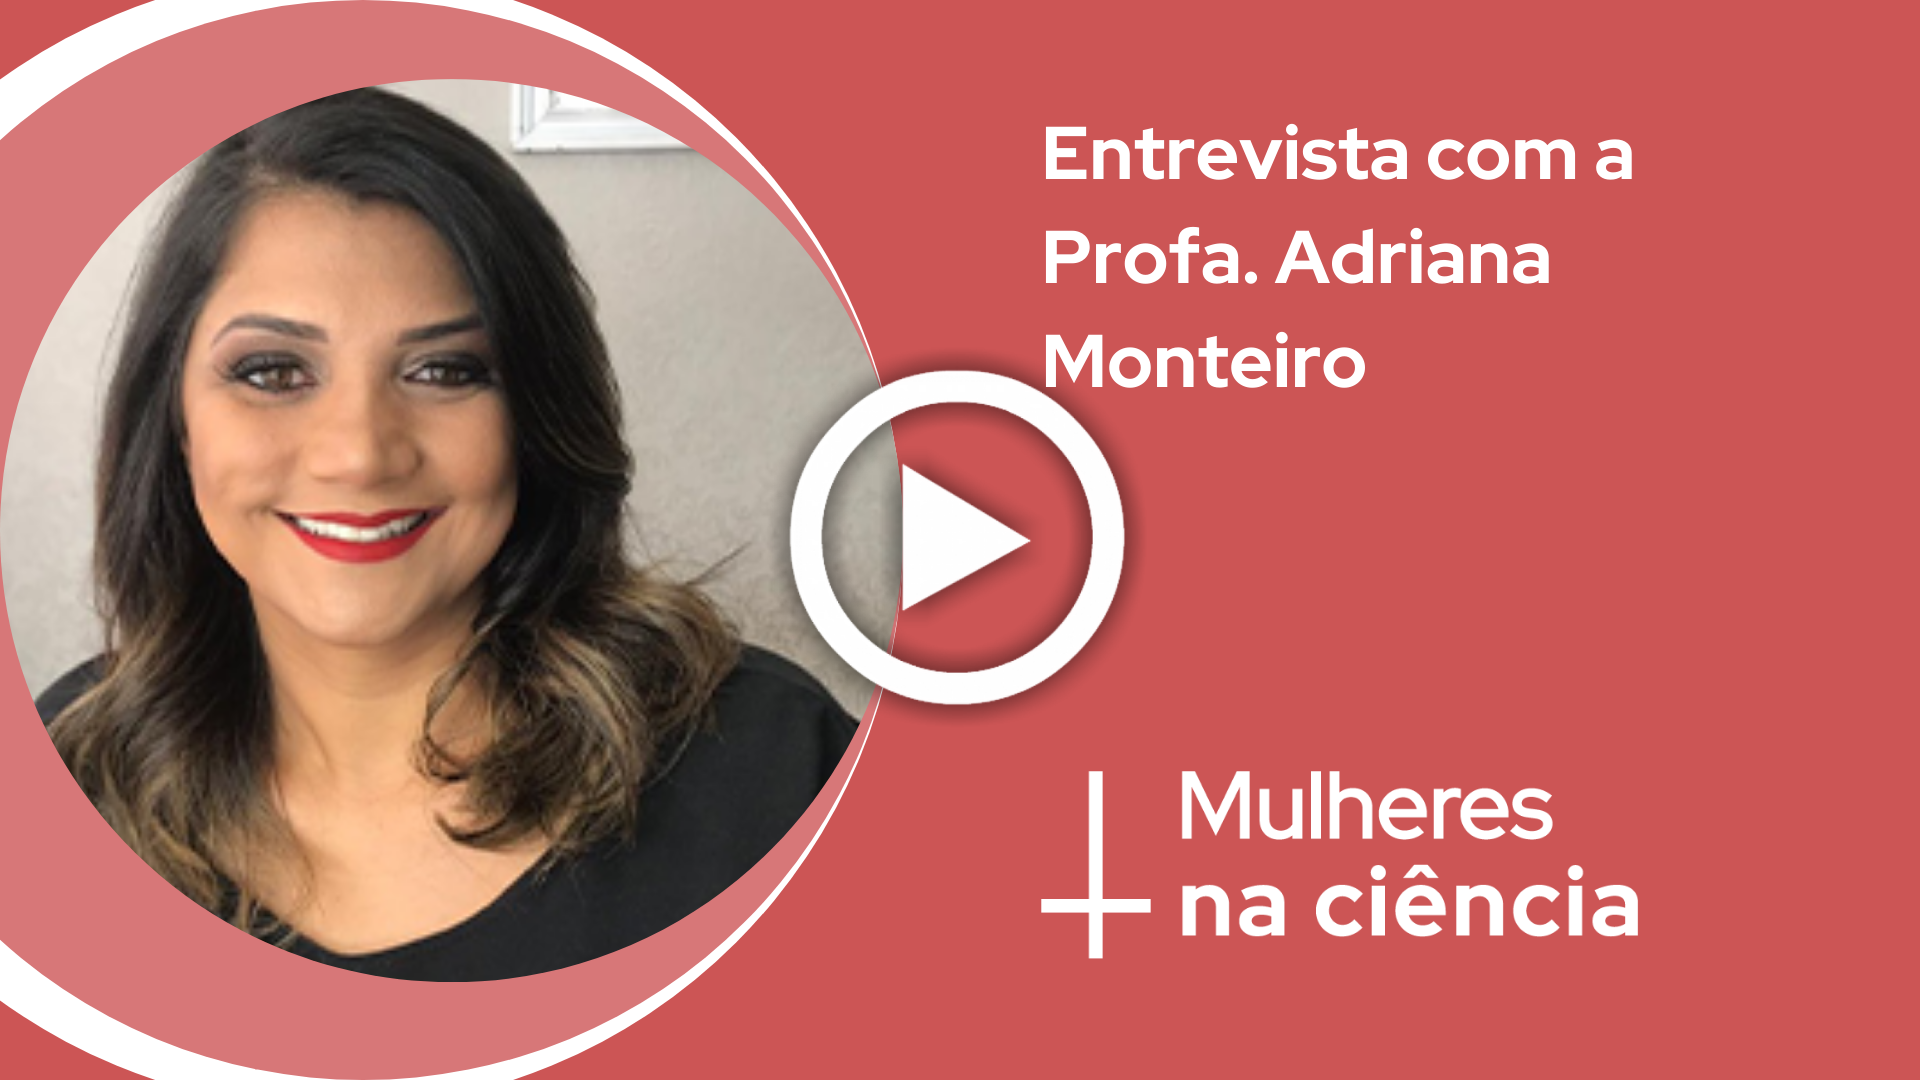 Entrevista com Adriana Monteiro